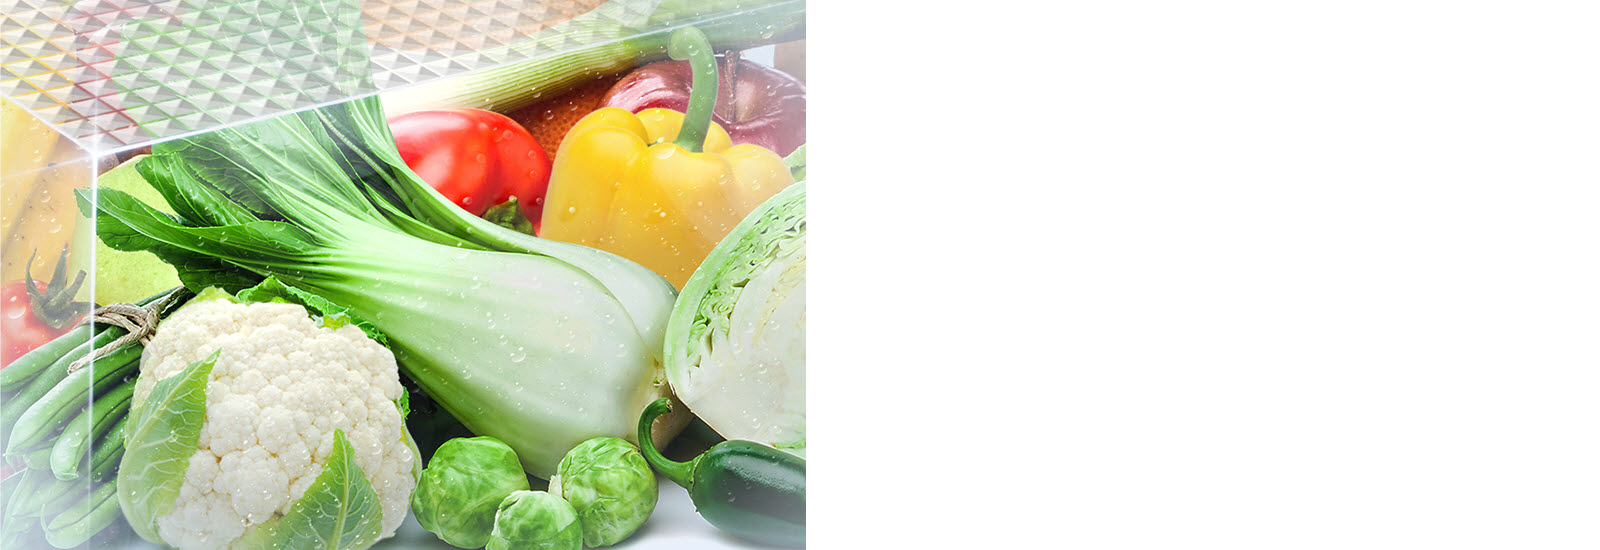 Des légumes frais et éclatants sont présentés à l’intérieur du bac à légumes.